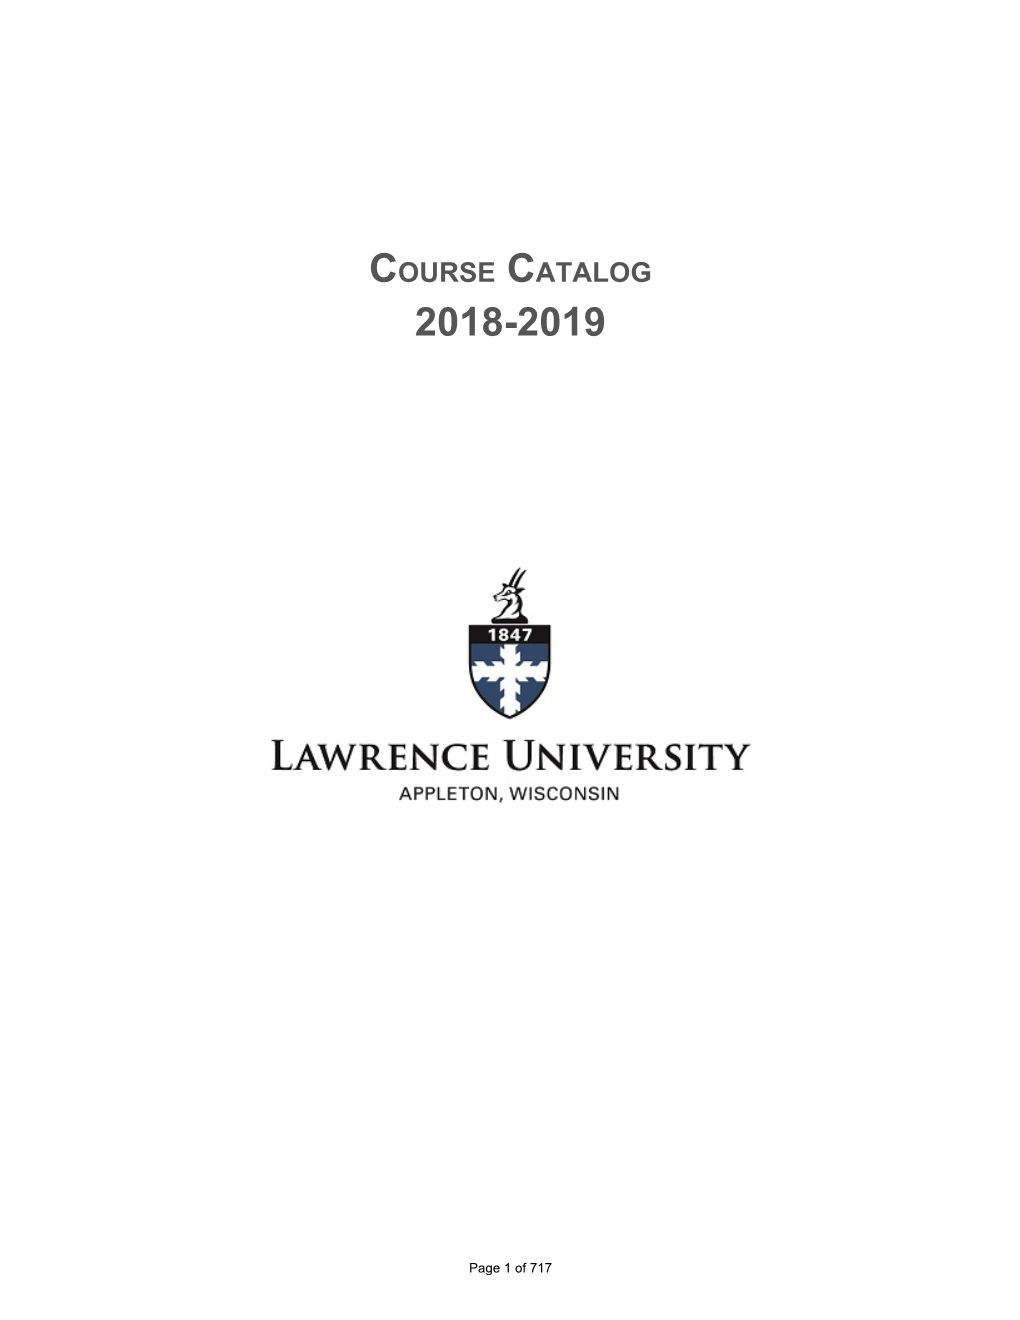 Course Catalog 2018-19 (PDF)